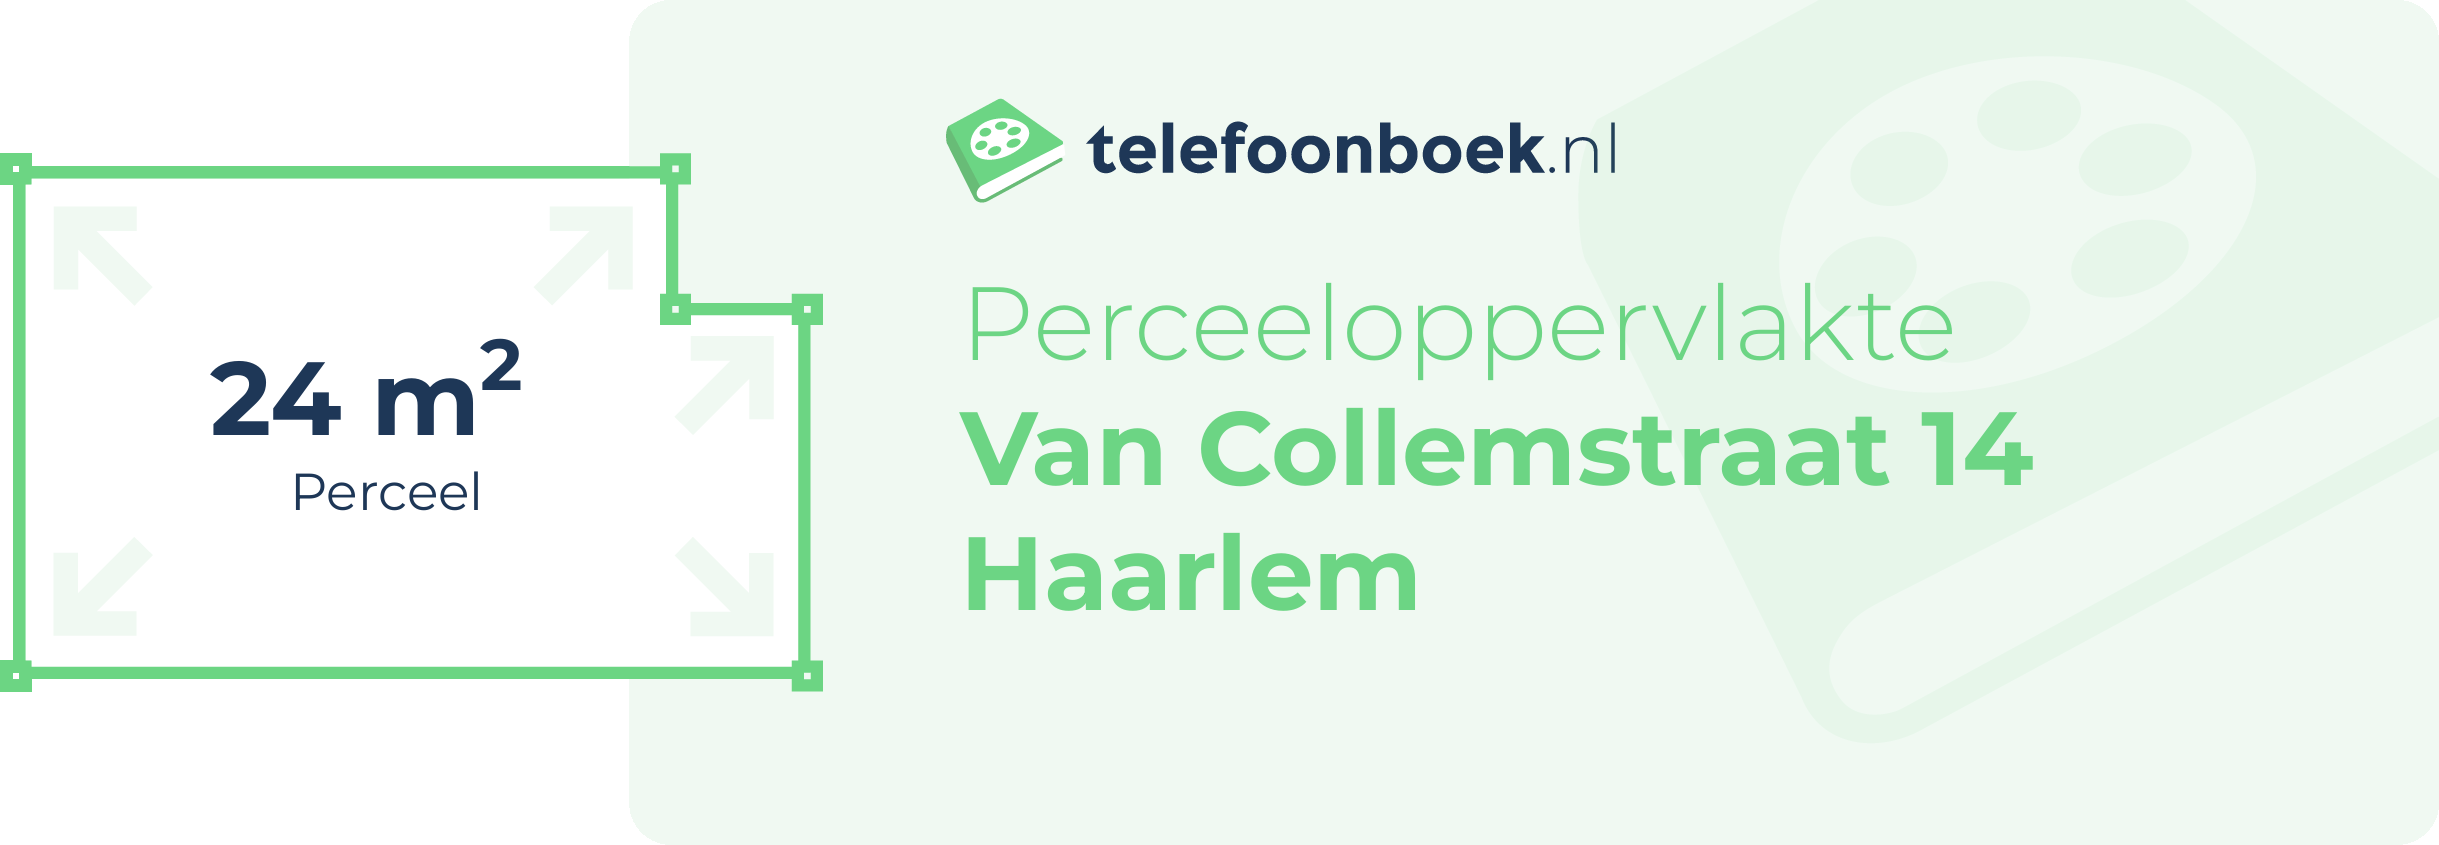 Perceeloppervlakte Van Collemstraat 14 Haarlem